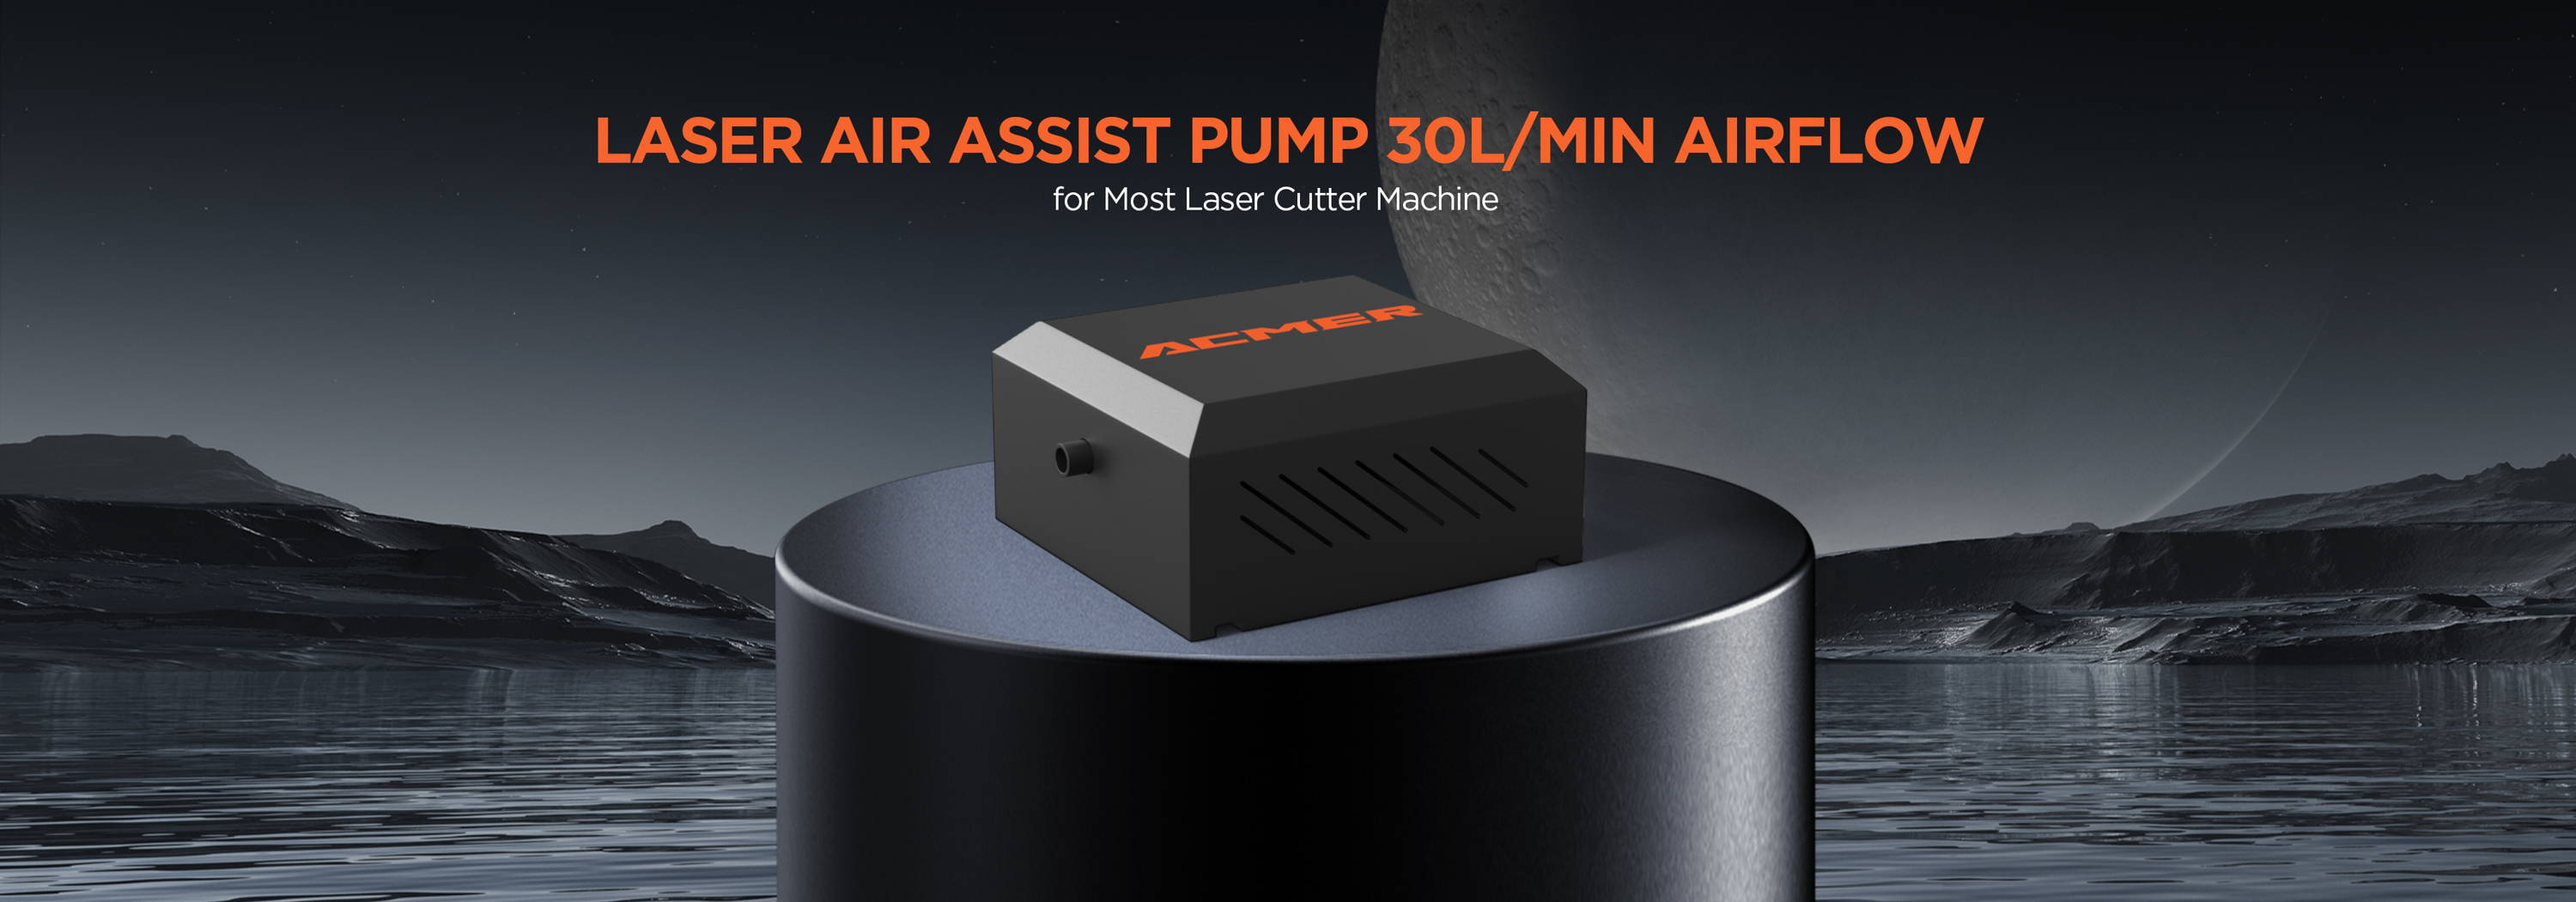 ACMER C4 Laser Air Assist Pump US